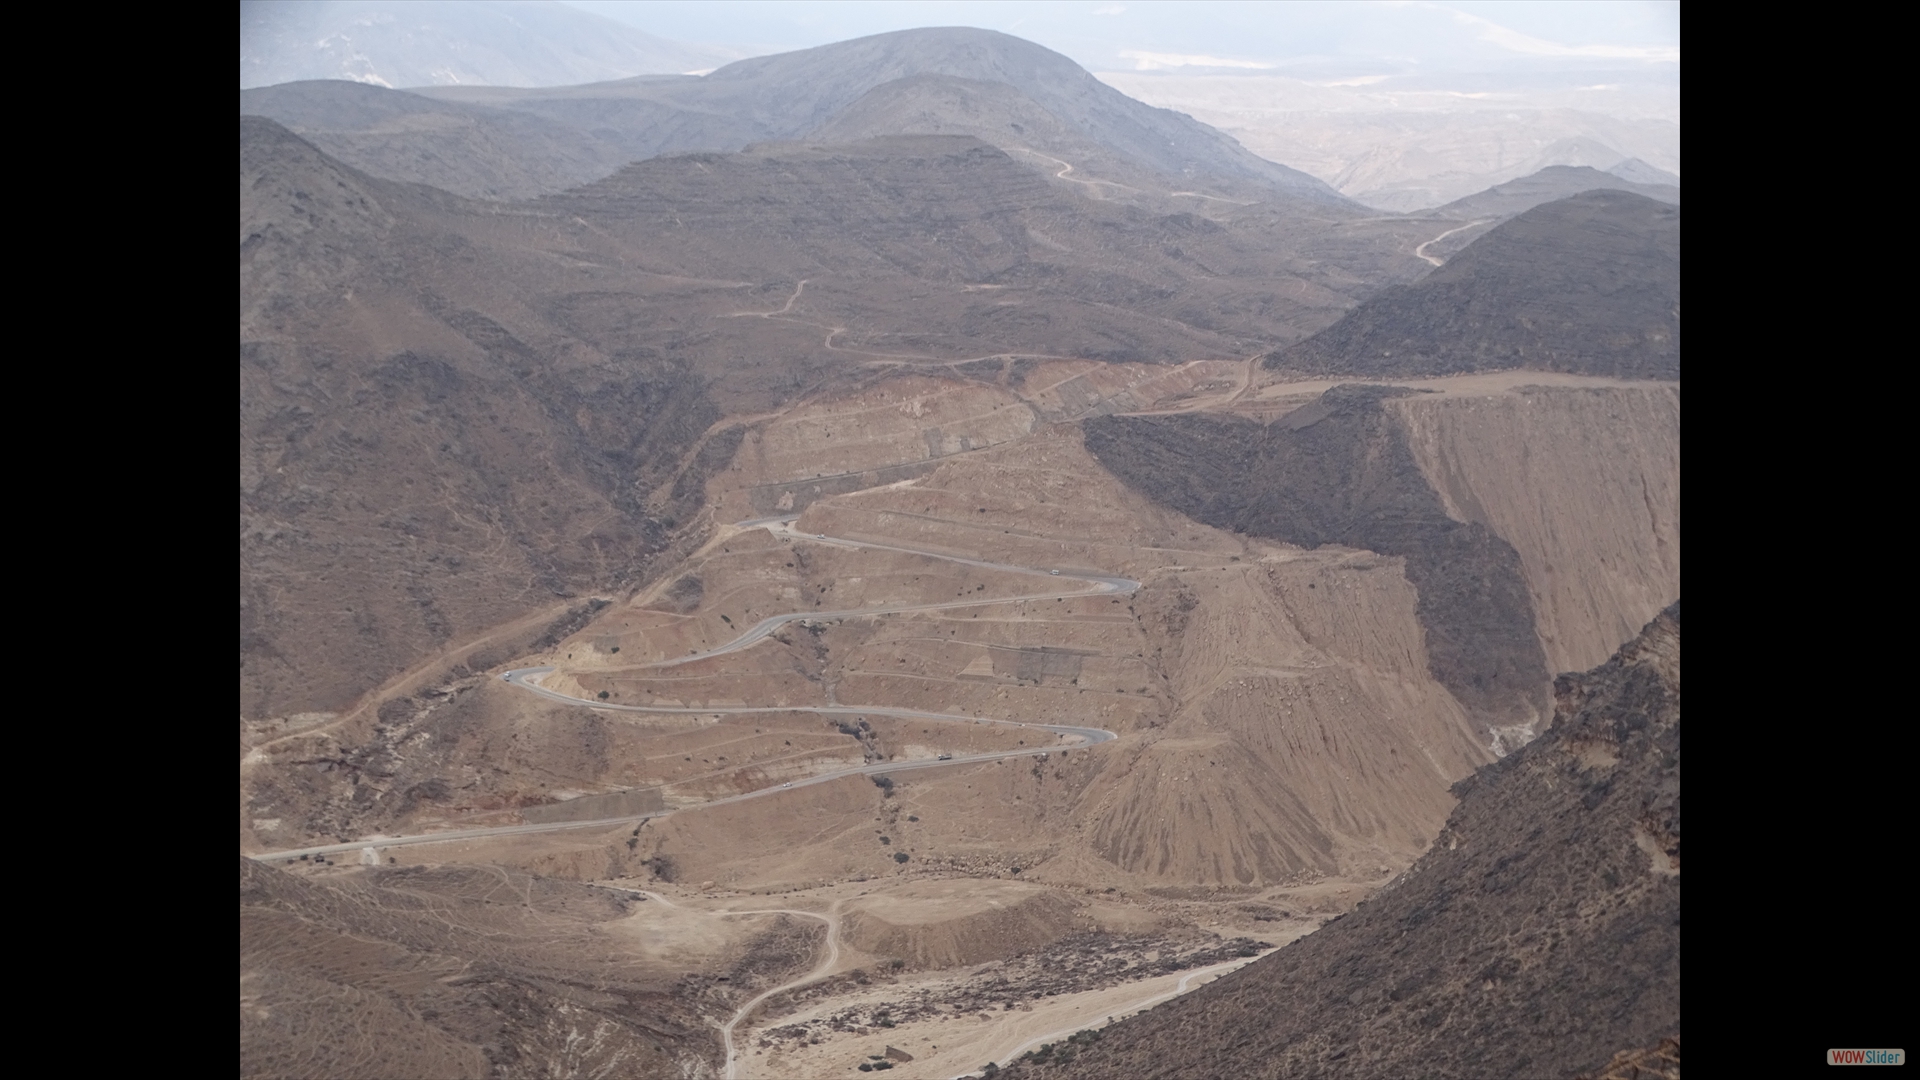 Zick-Zack-Road in Richtung Jemen, 5 km Serpentin auf 500 m Höhe